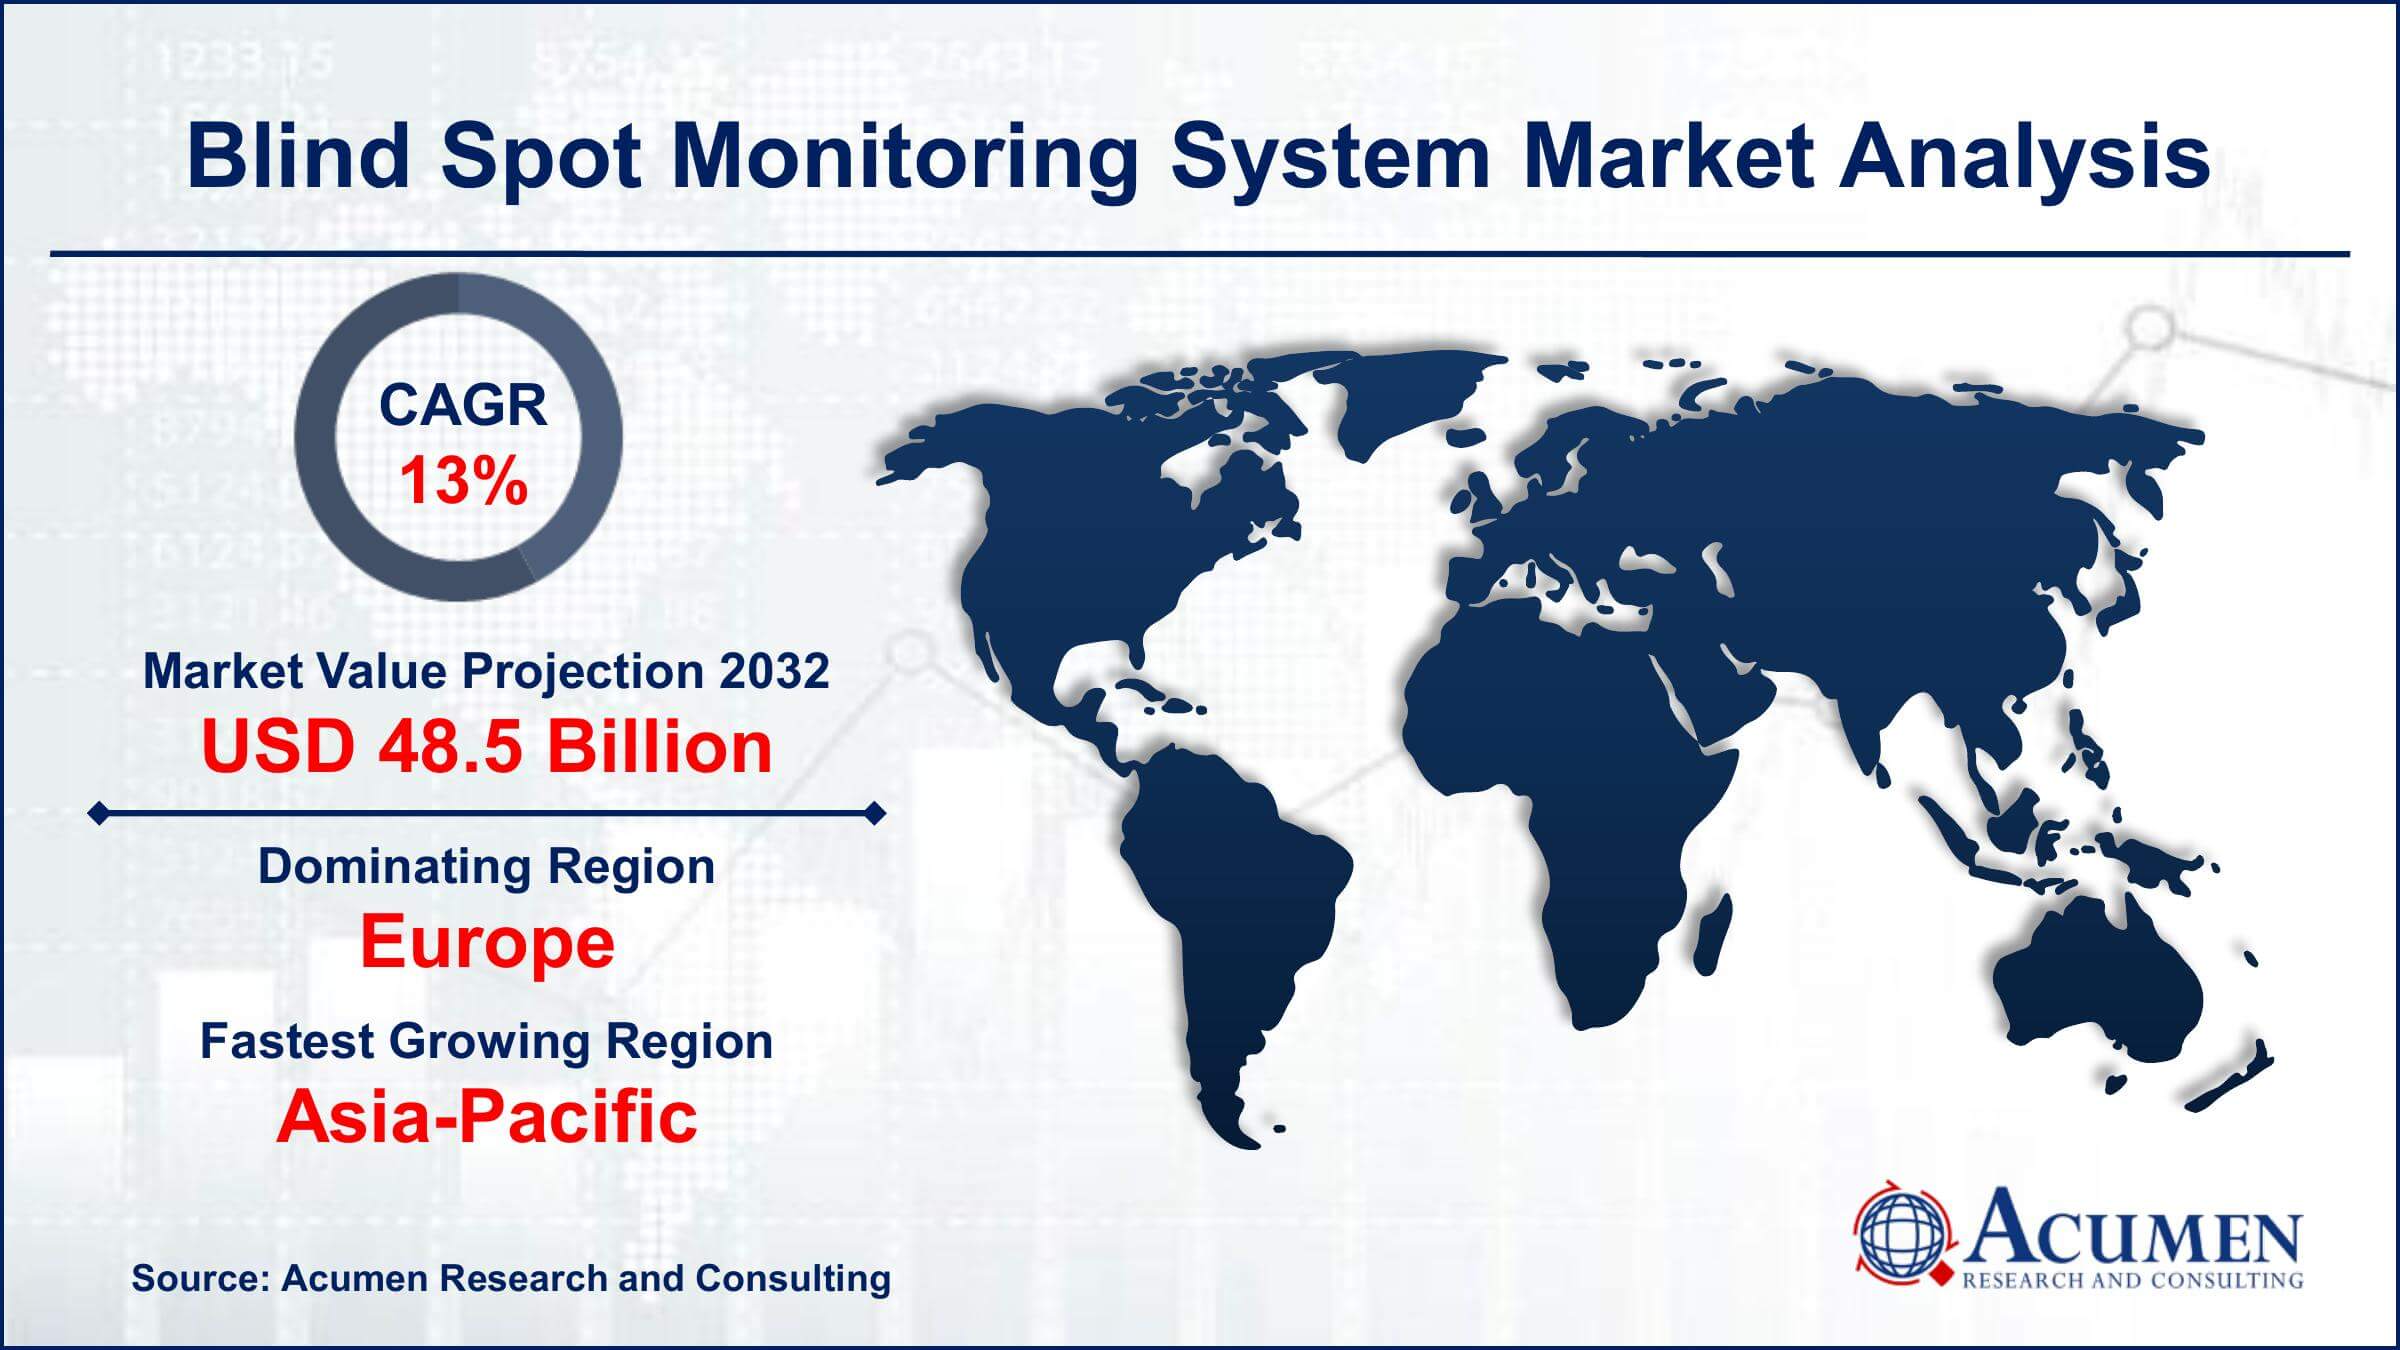 Global Blind Spot Monitoring System Market Trends